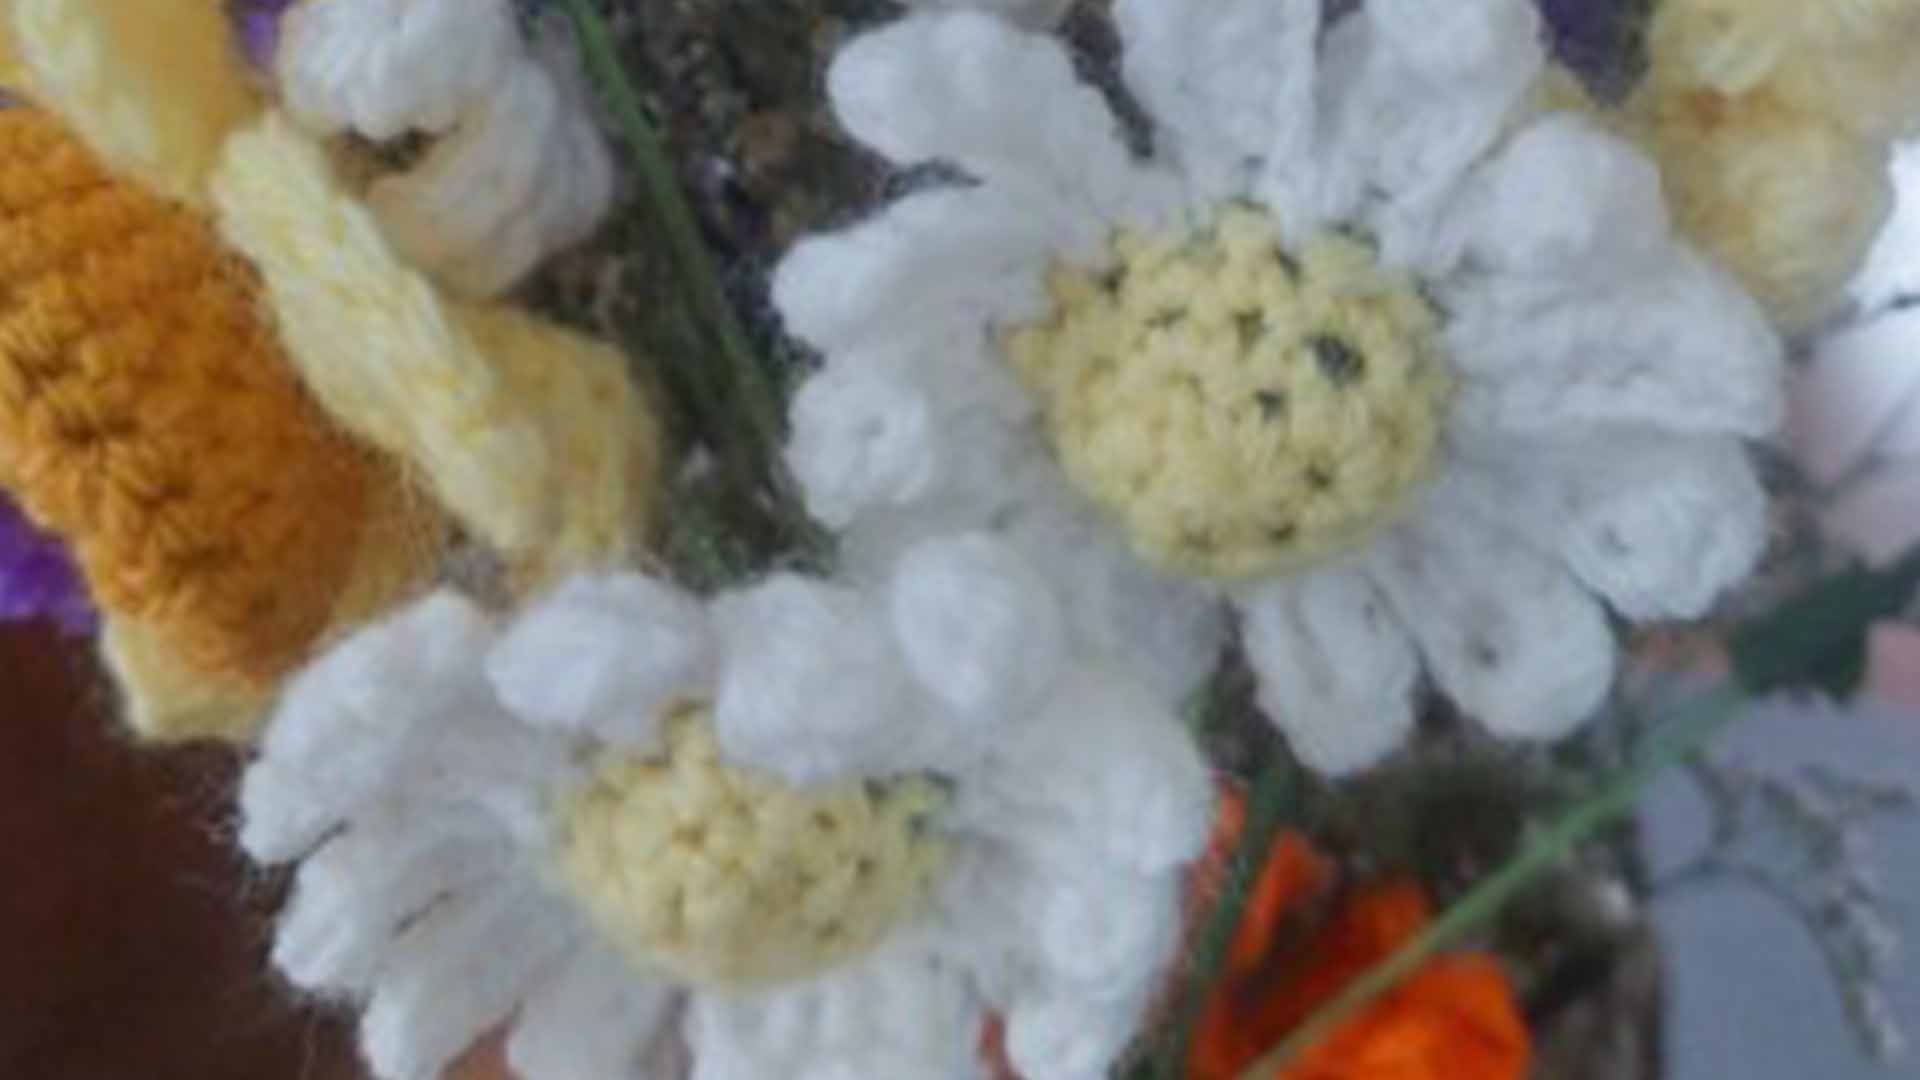 Bouquet de fleurs au crochet au Musée de l'impression sur Étoffes à Mulhouse